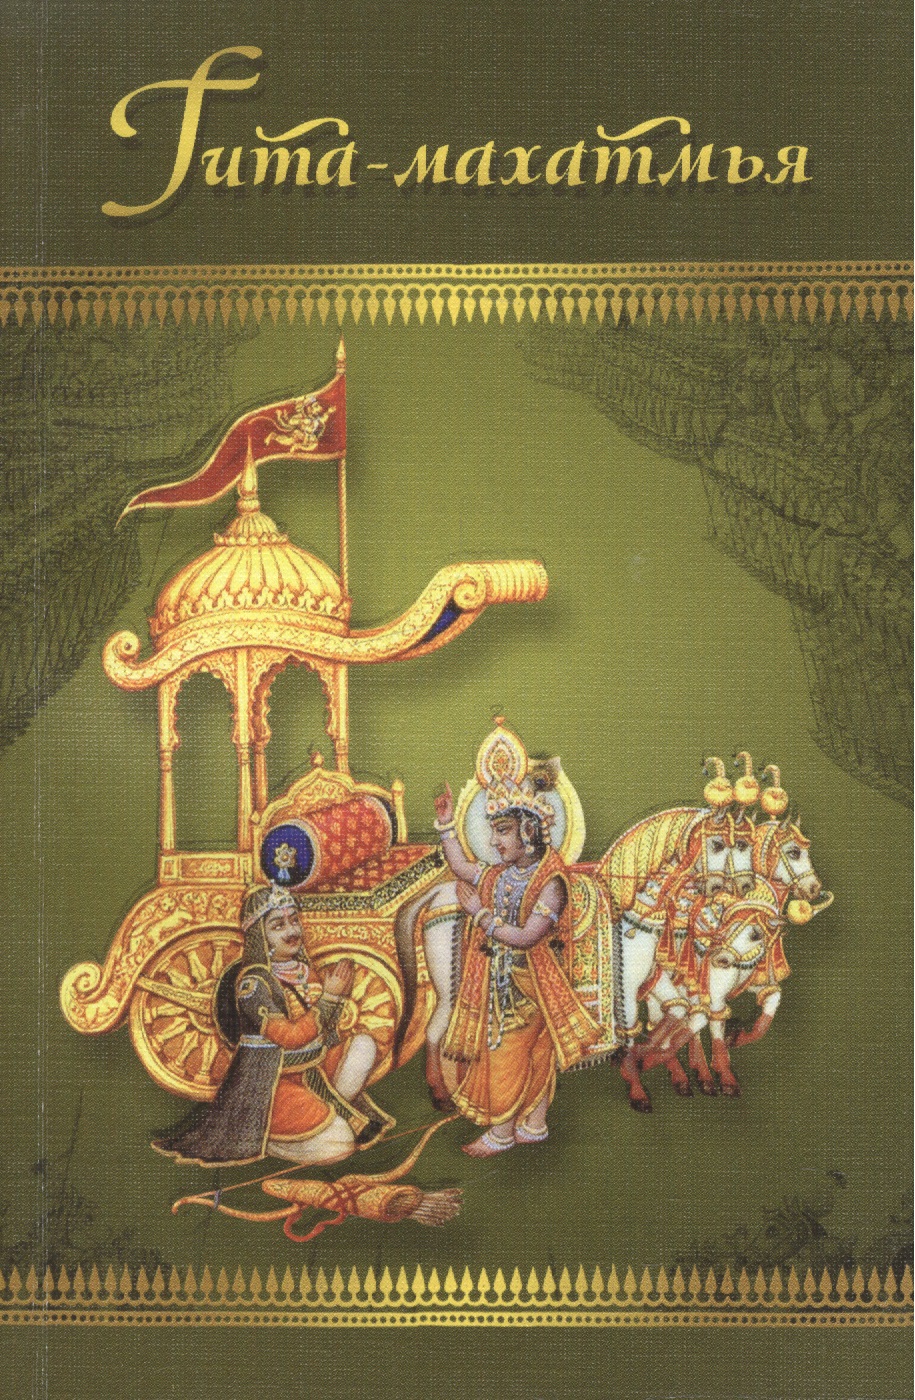 Гита-махатмья. Прославление Бхагавад-гиты из Падма-пураны философия бхагавад гиты субба роу